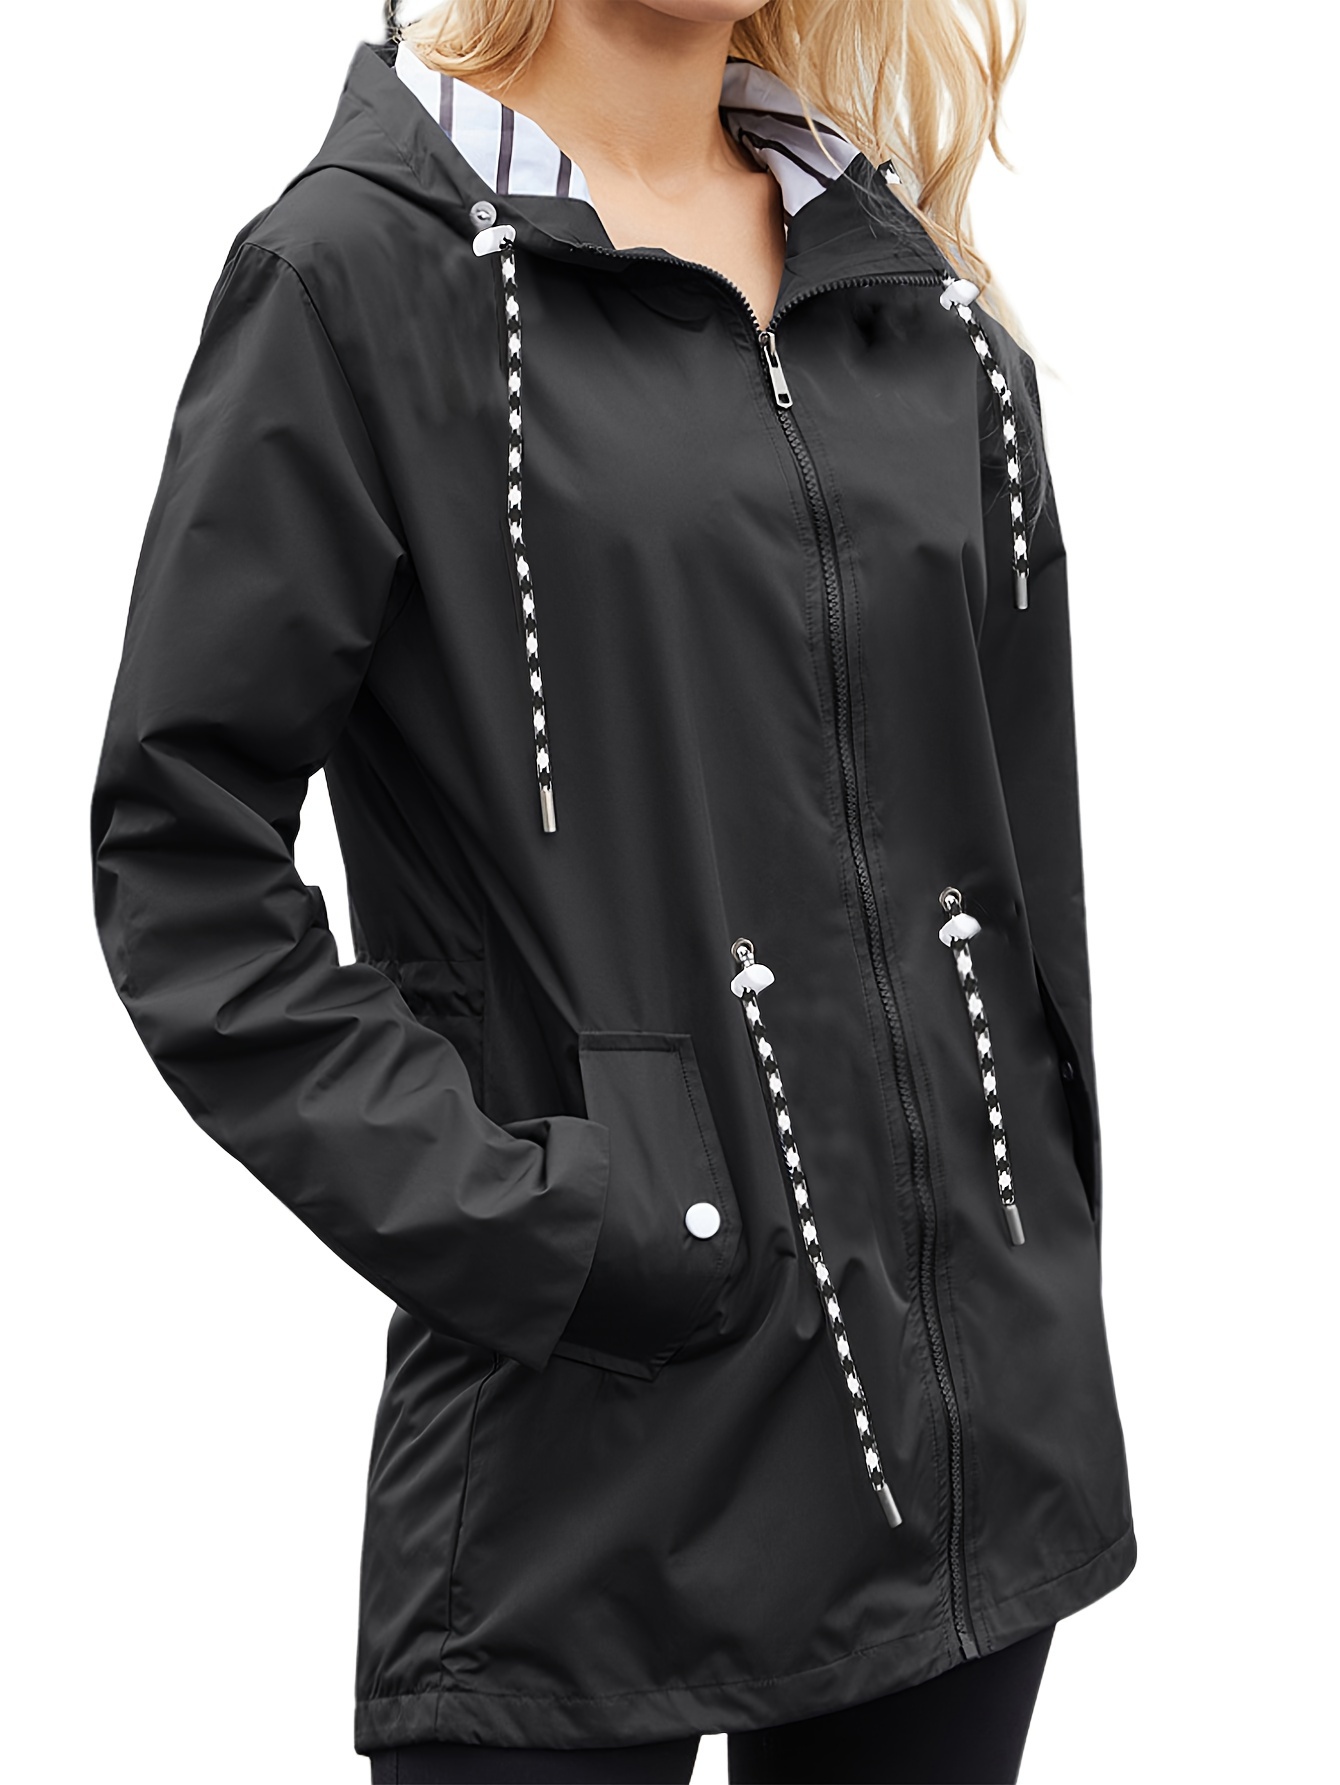 33,000ft Packable Rain Jacket Women Lightweight Waterproof Raincoat with Hood Cycling Bike Jacket Windbreaker, Women's, Size: Large, Black